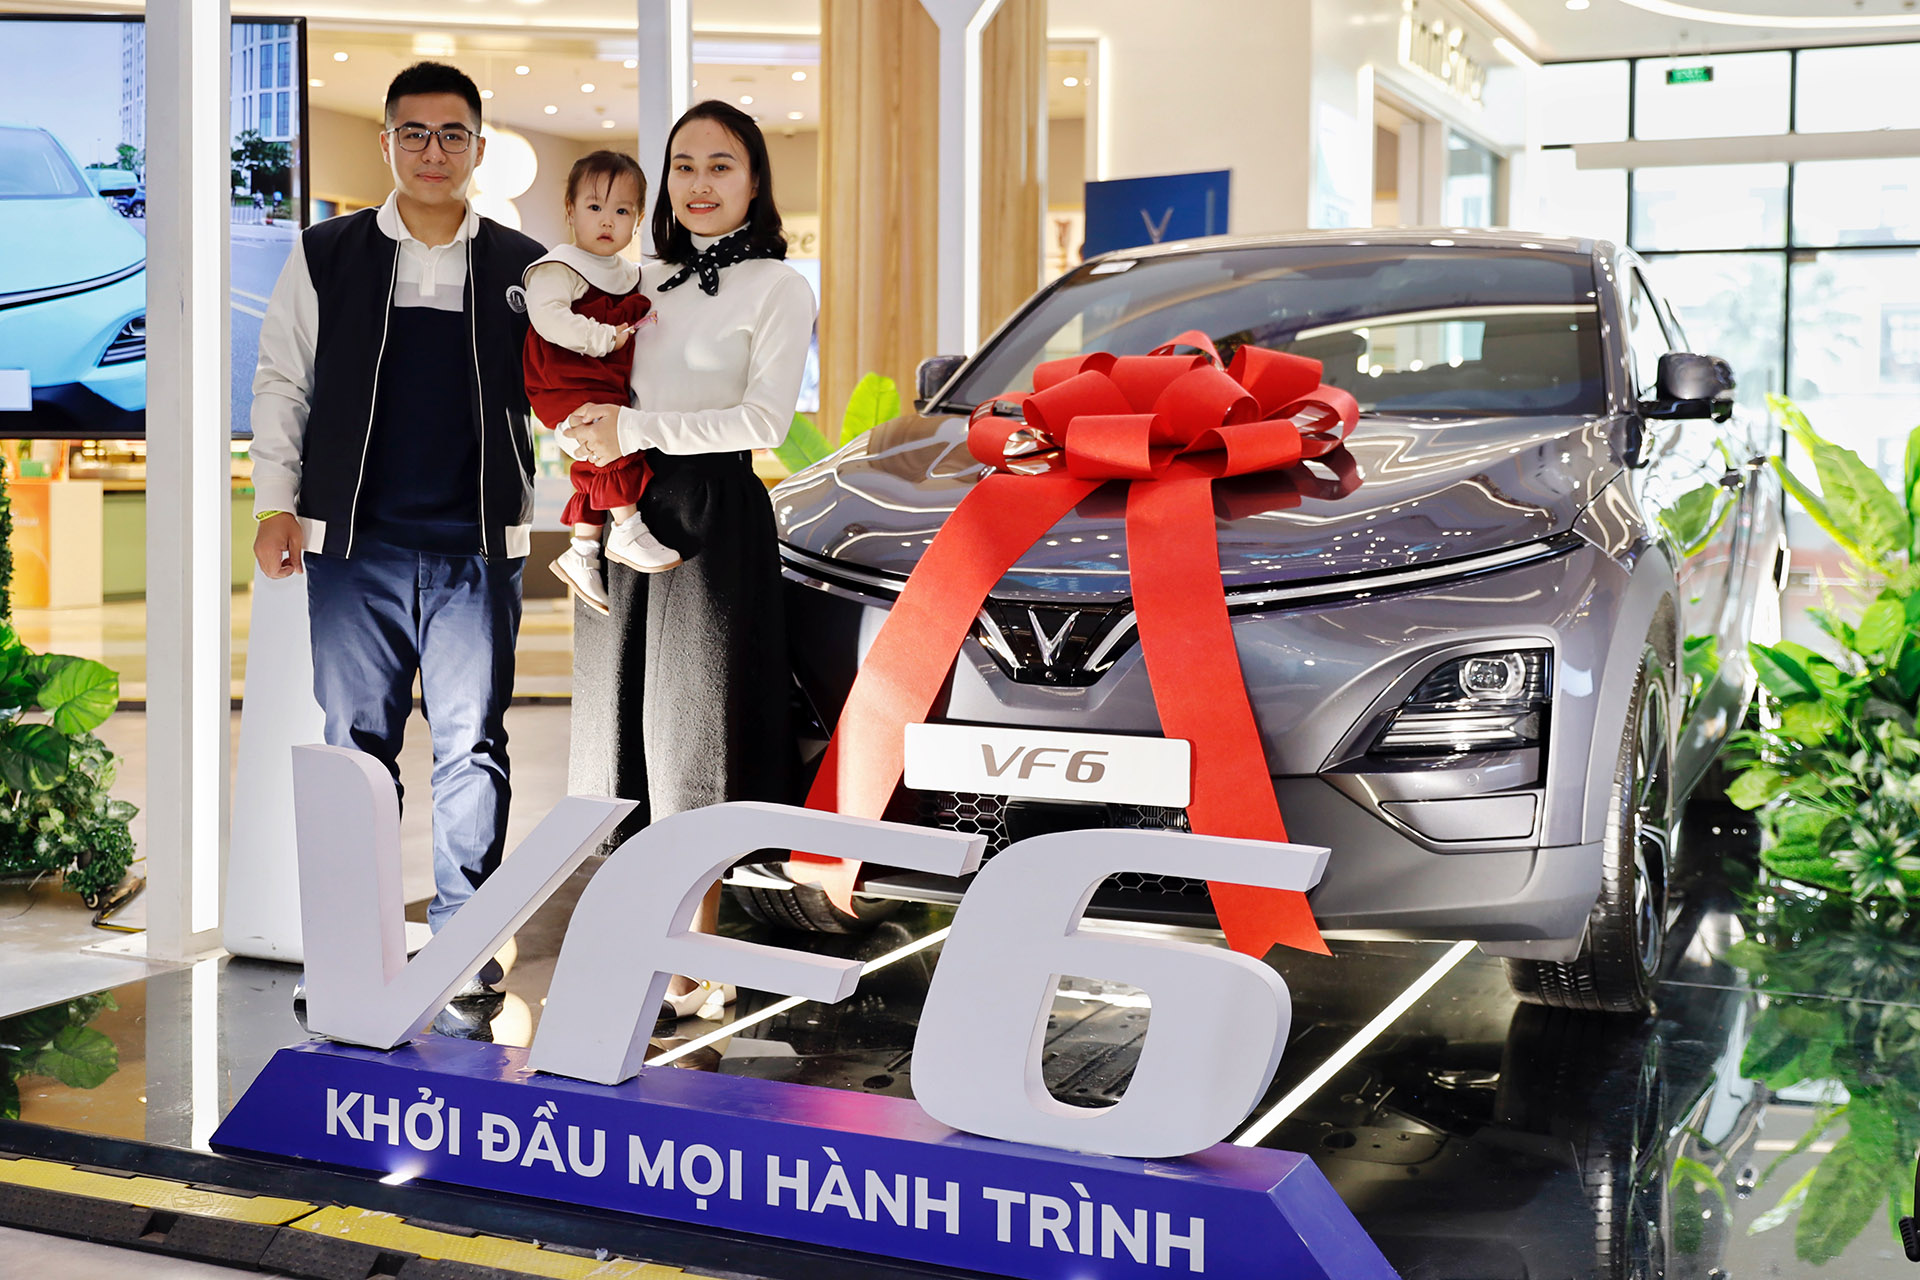 Gia đình anh Nguyễn Anh Tú là một trong những khách hàng đầu tiên nhận xe VF 6 tại Hà Nội